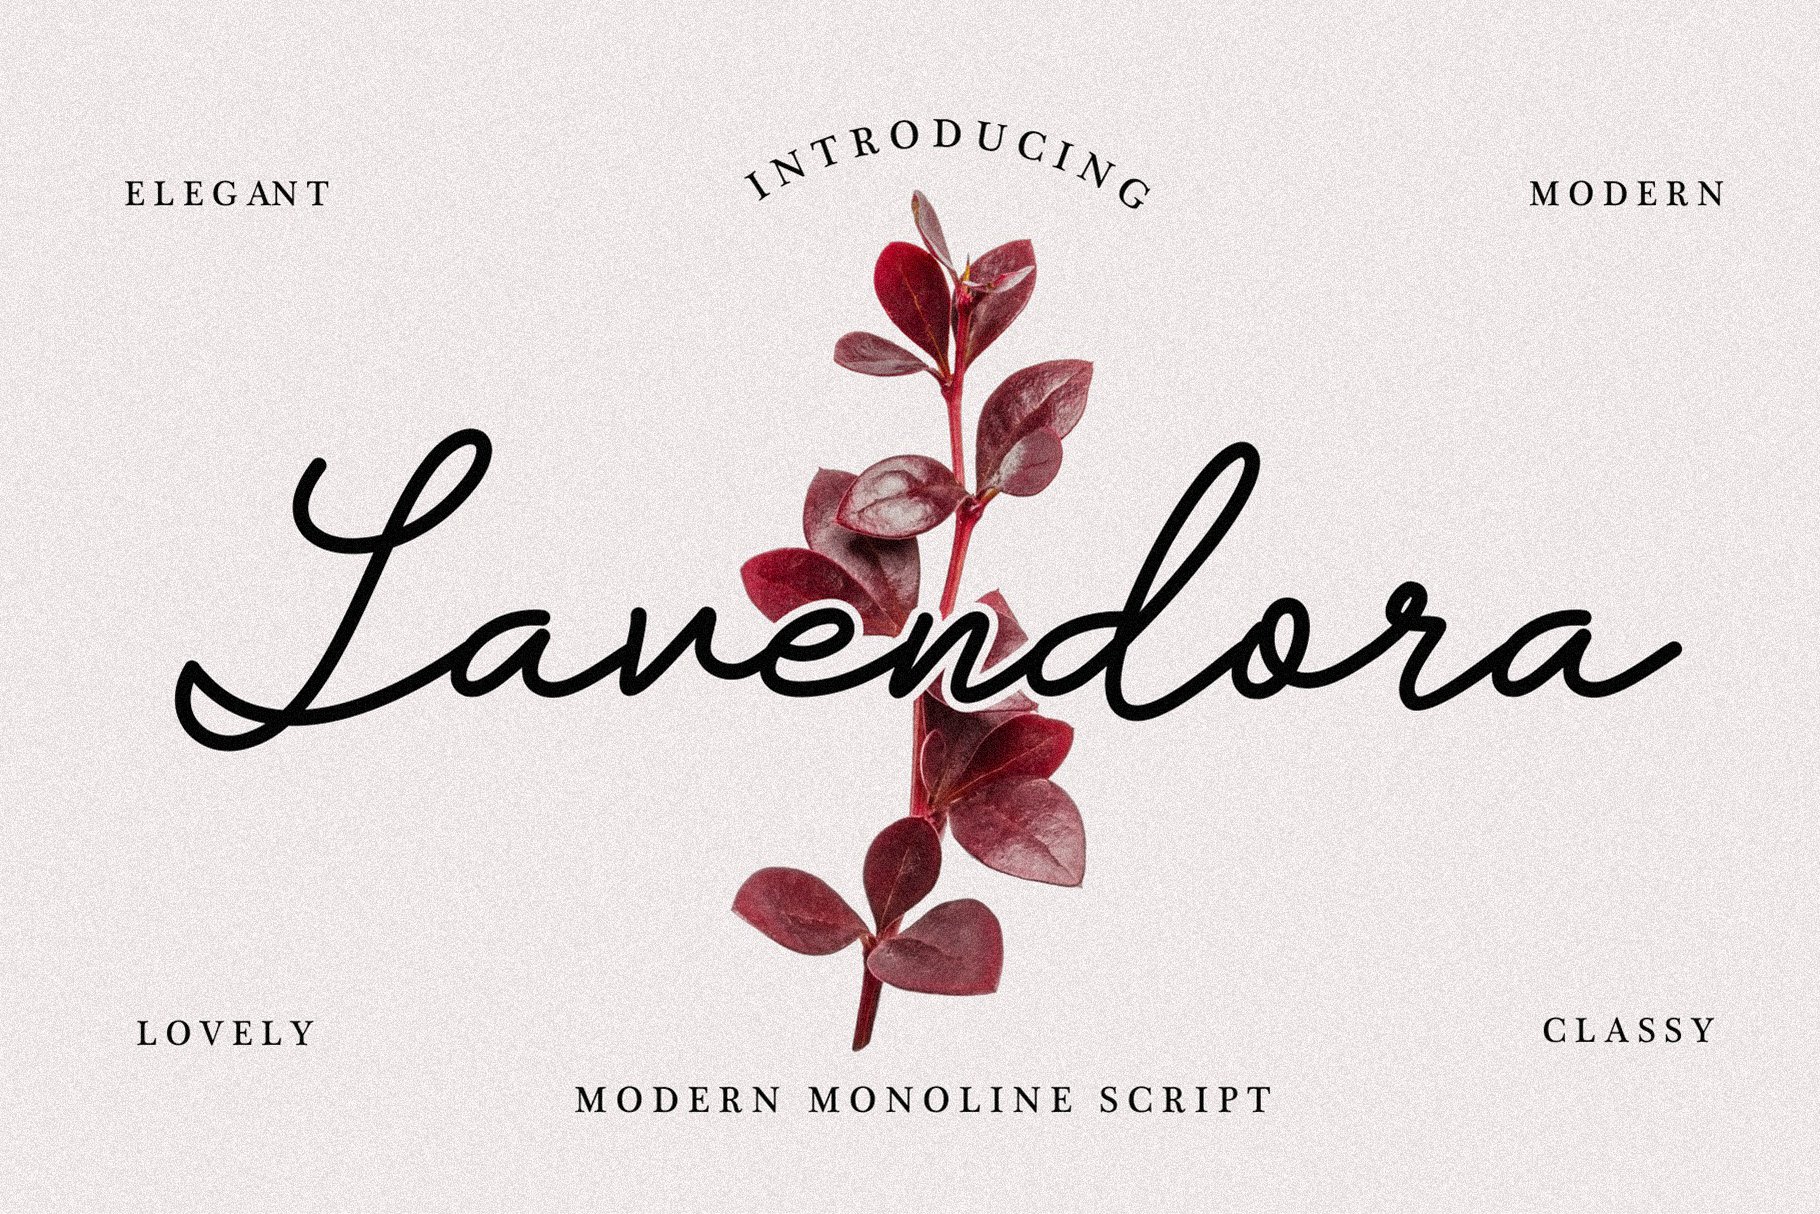 Lavendora - Modern Monoline Script cover image.